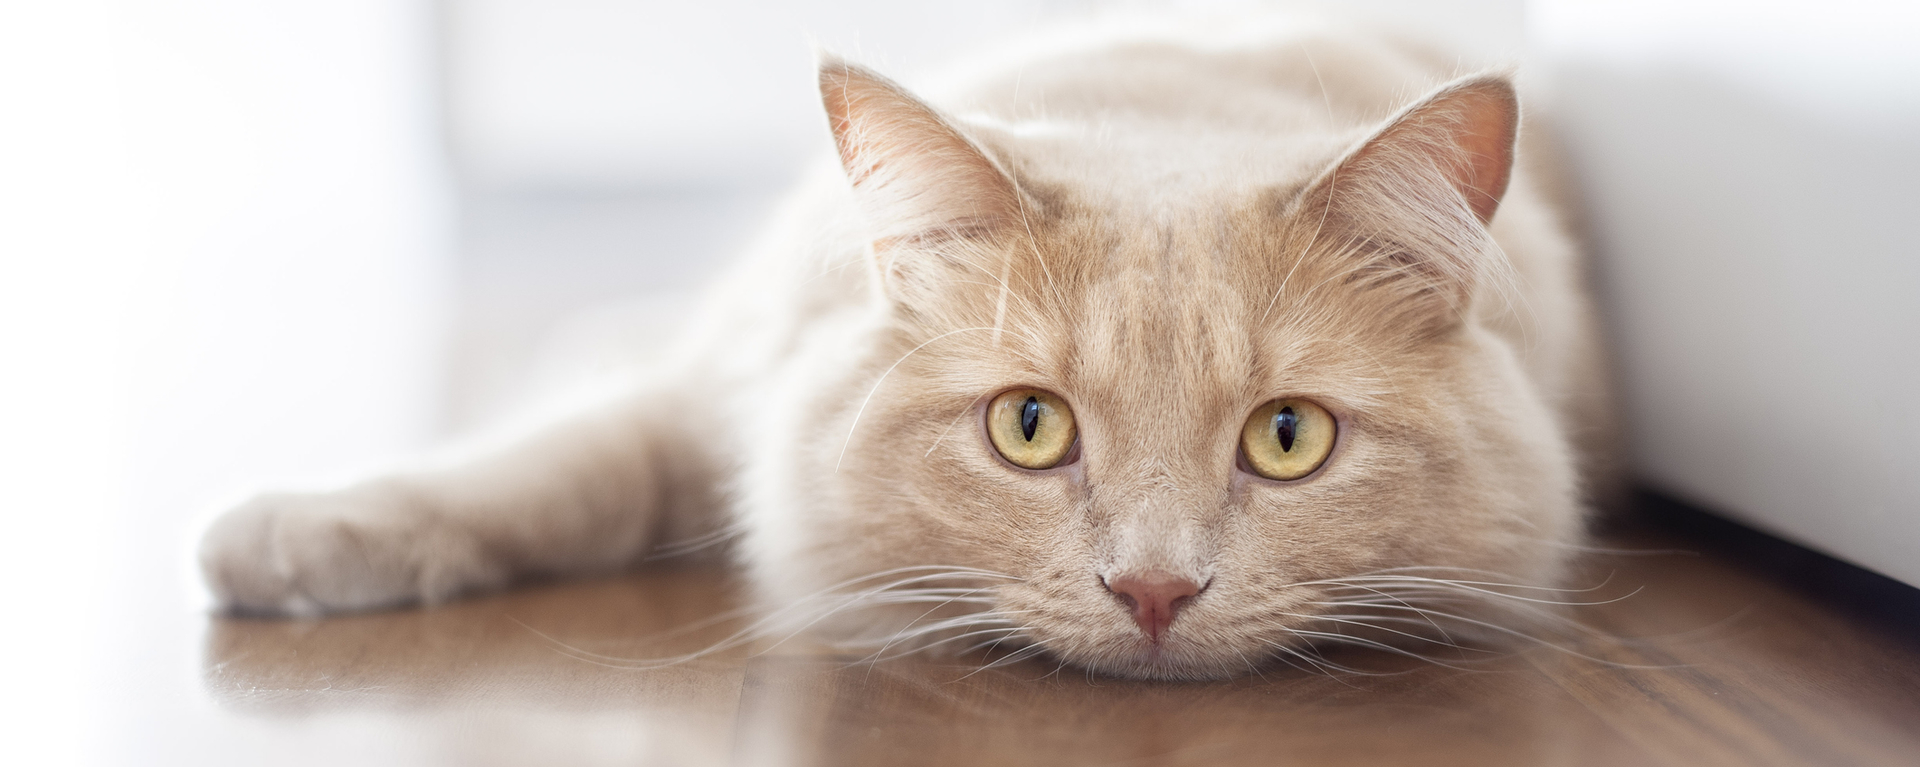 Почему кошка облизывается: 8 причин, которые вам неизвестны